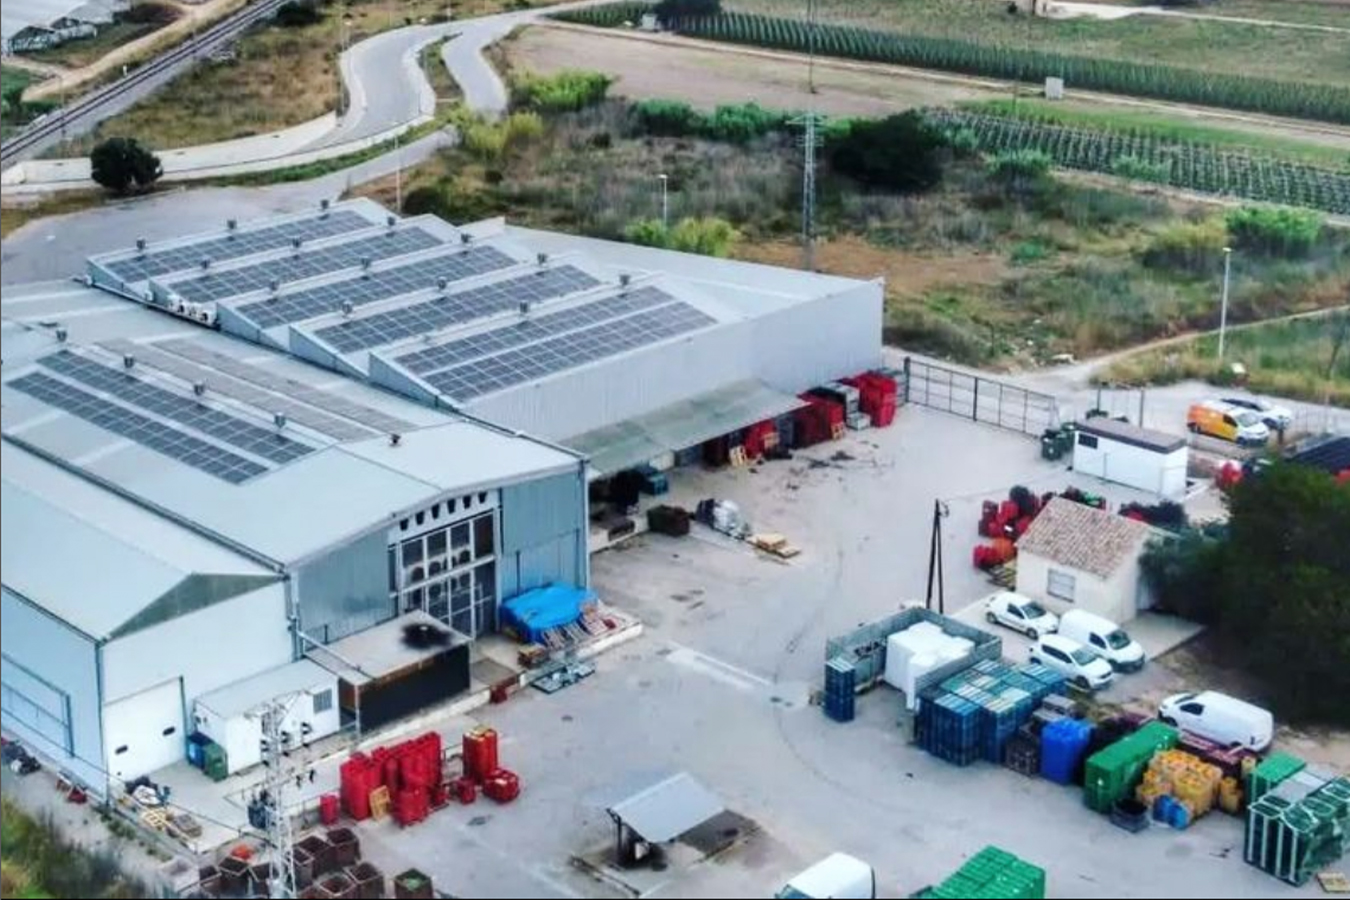 La Cooperativa Progrés Garbí instal·la plaques solars